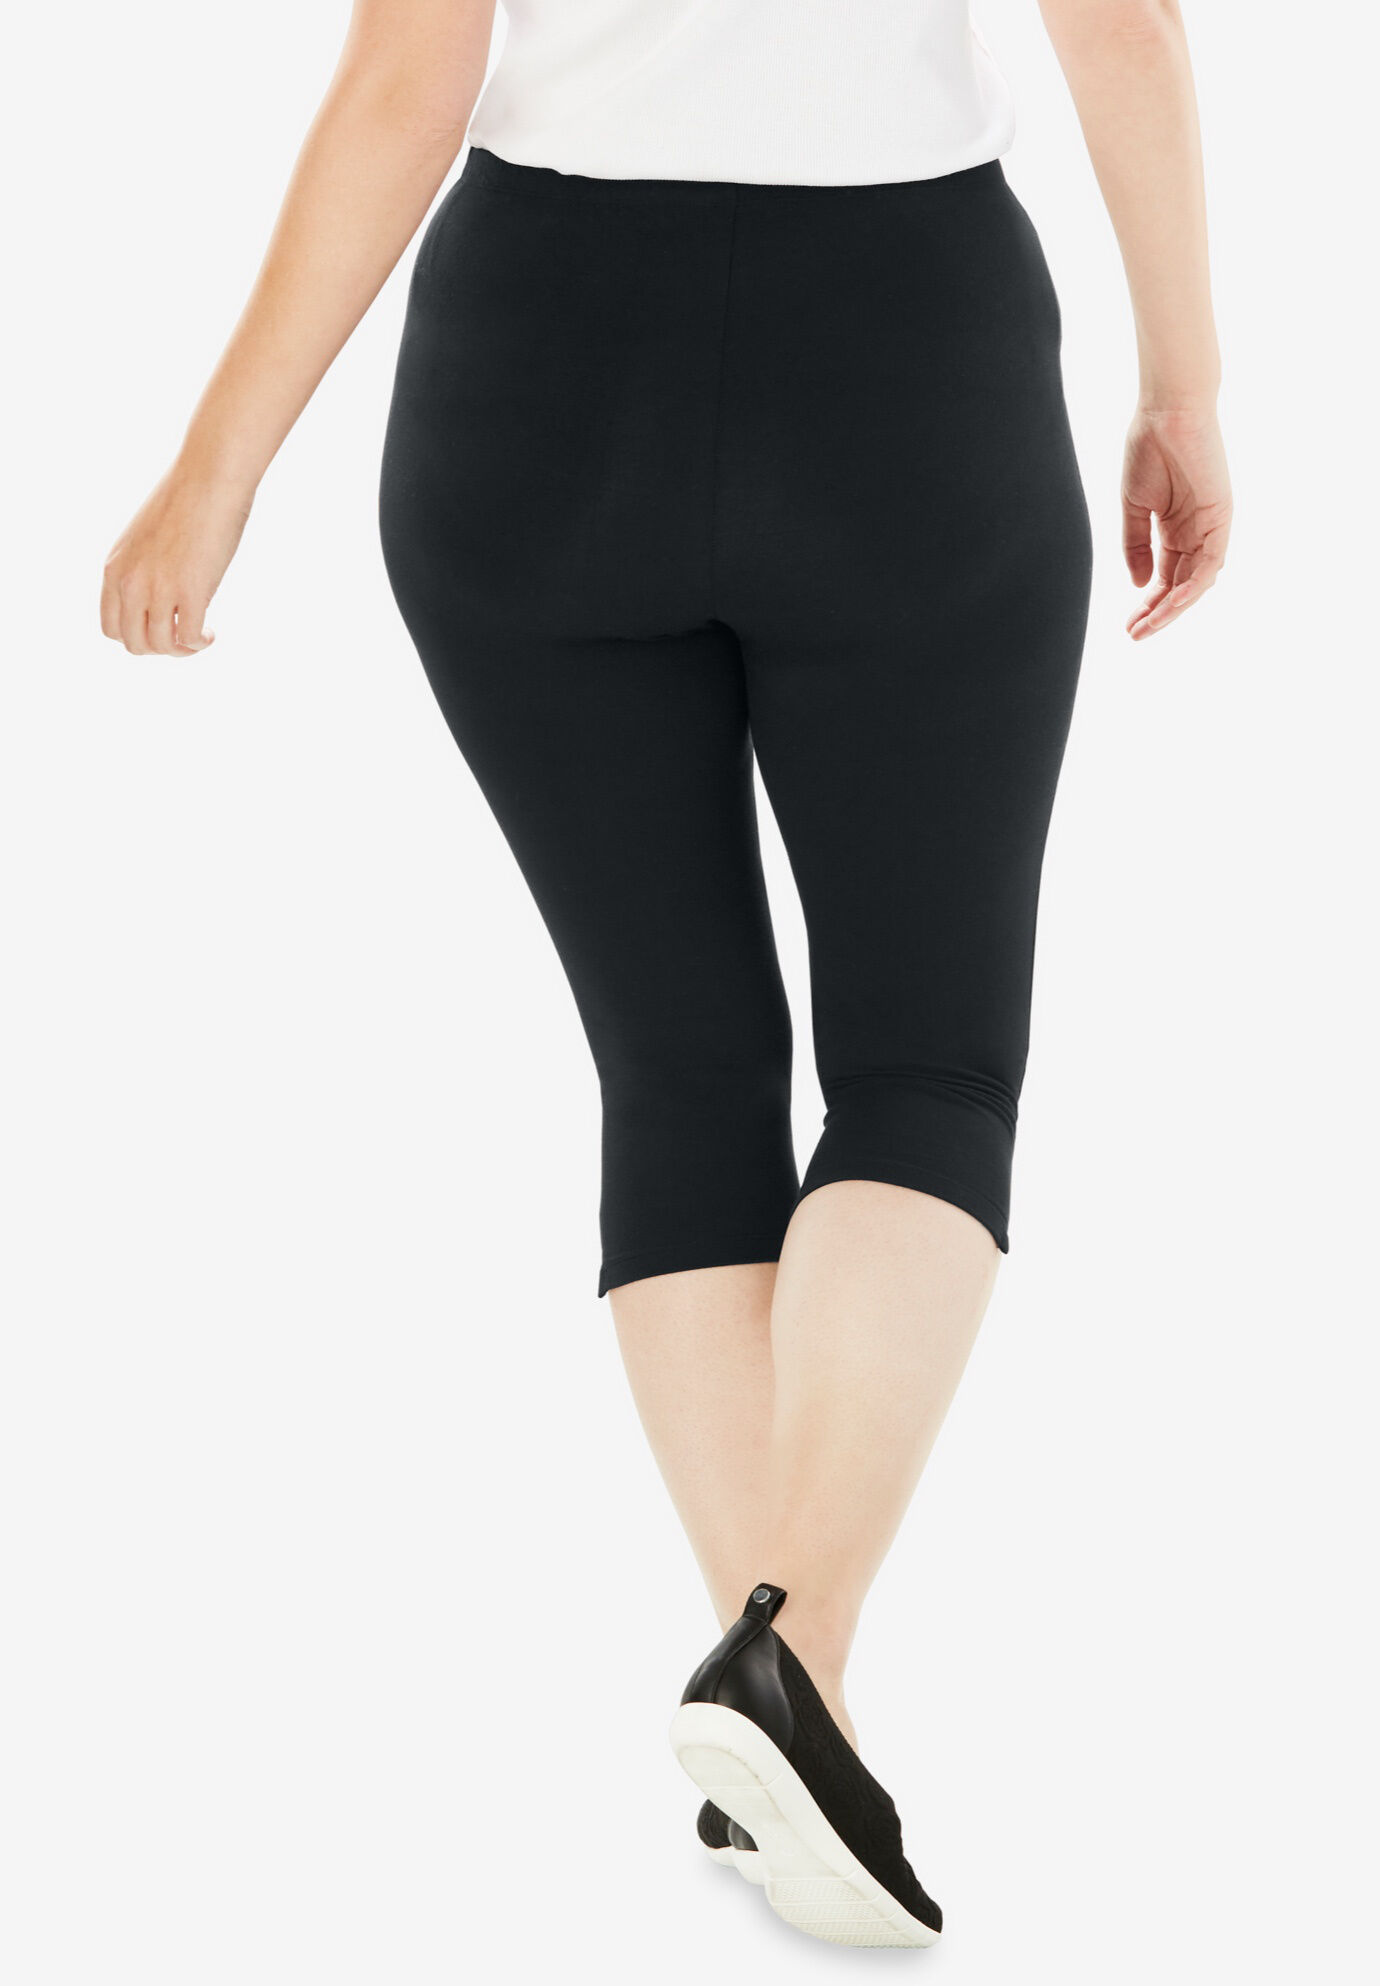 Buy Allen Solly Black Slim Fit Jeggings for Women Online @ Tata CLiQ